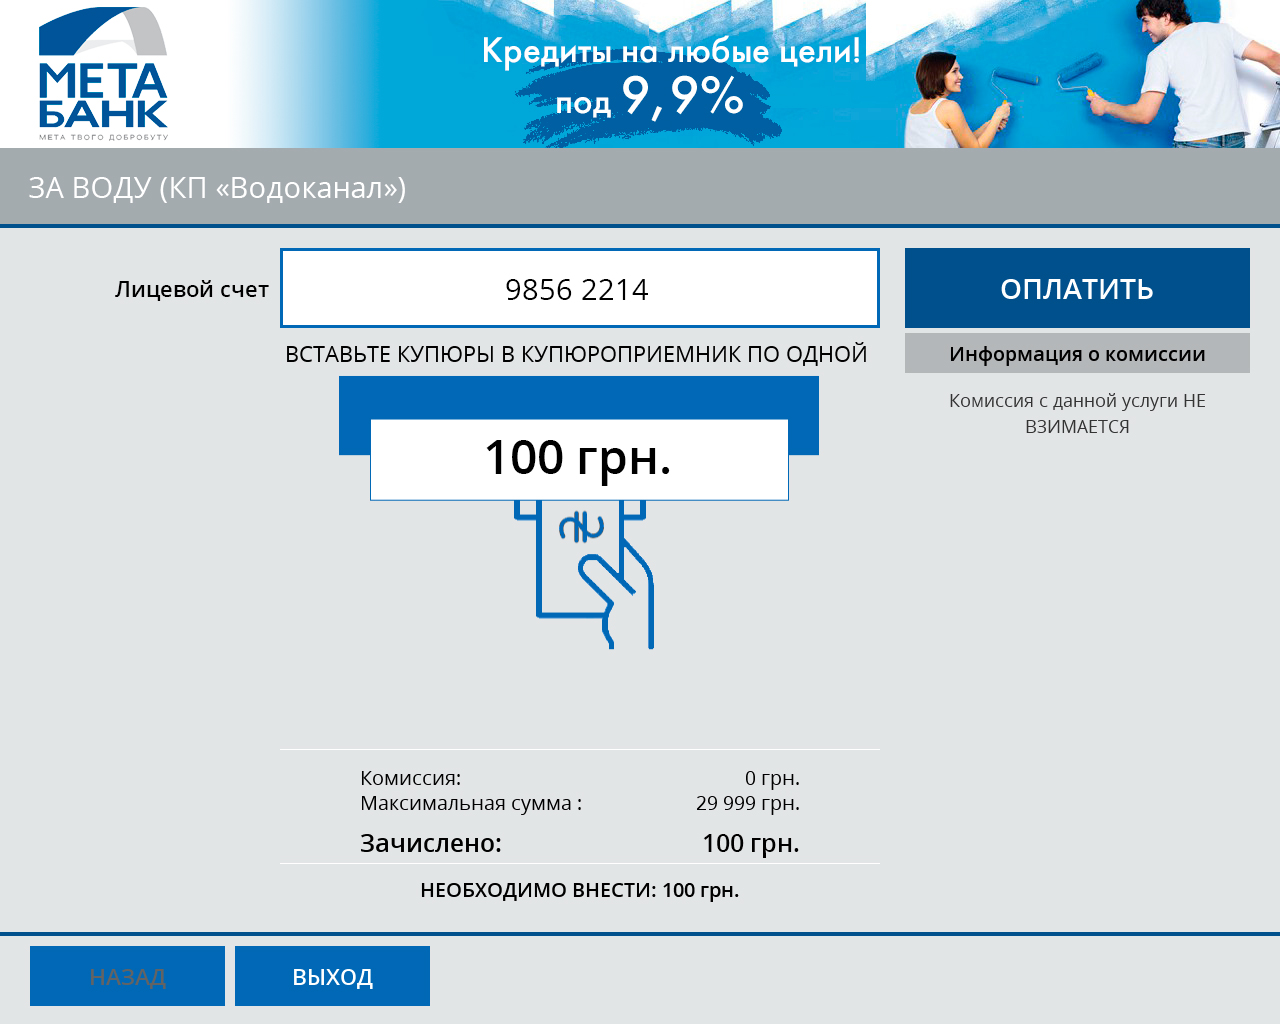 МетаБанк (Украина) автоматизирует прием платежей через сеть терминалов - рис.4